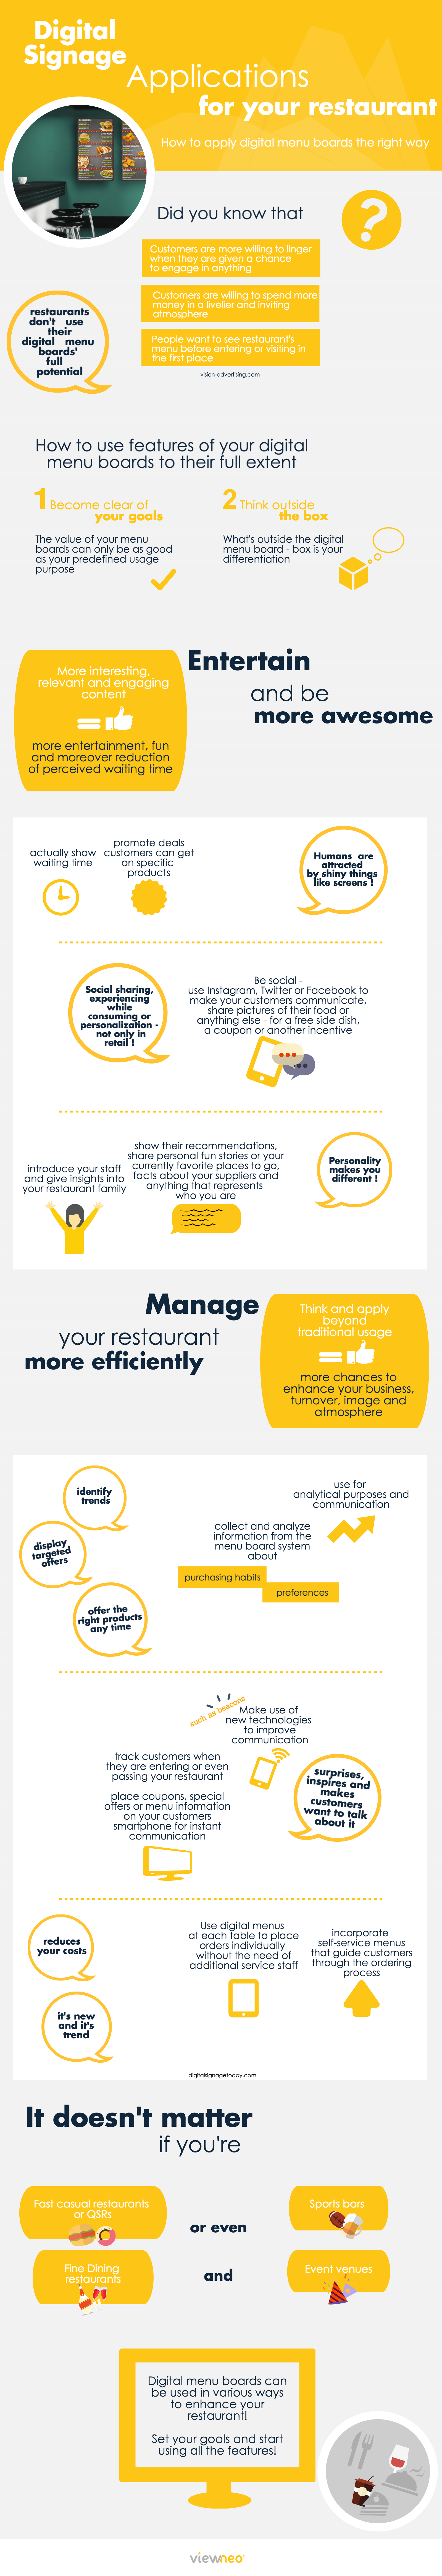 Digital Signage Infographic, Digital Menu Boards for Restaurants